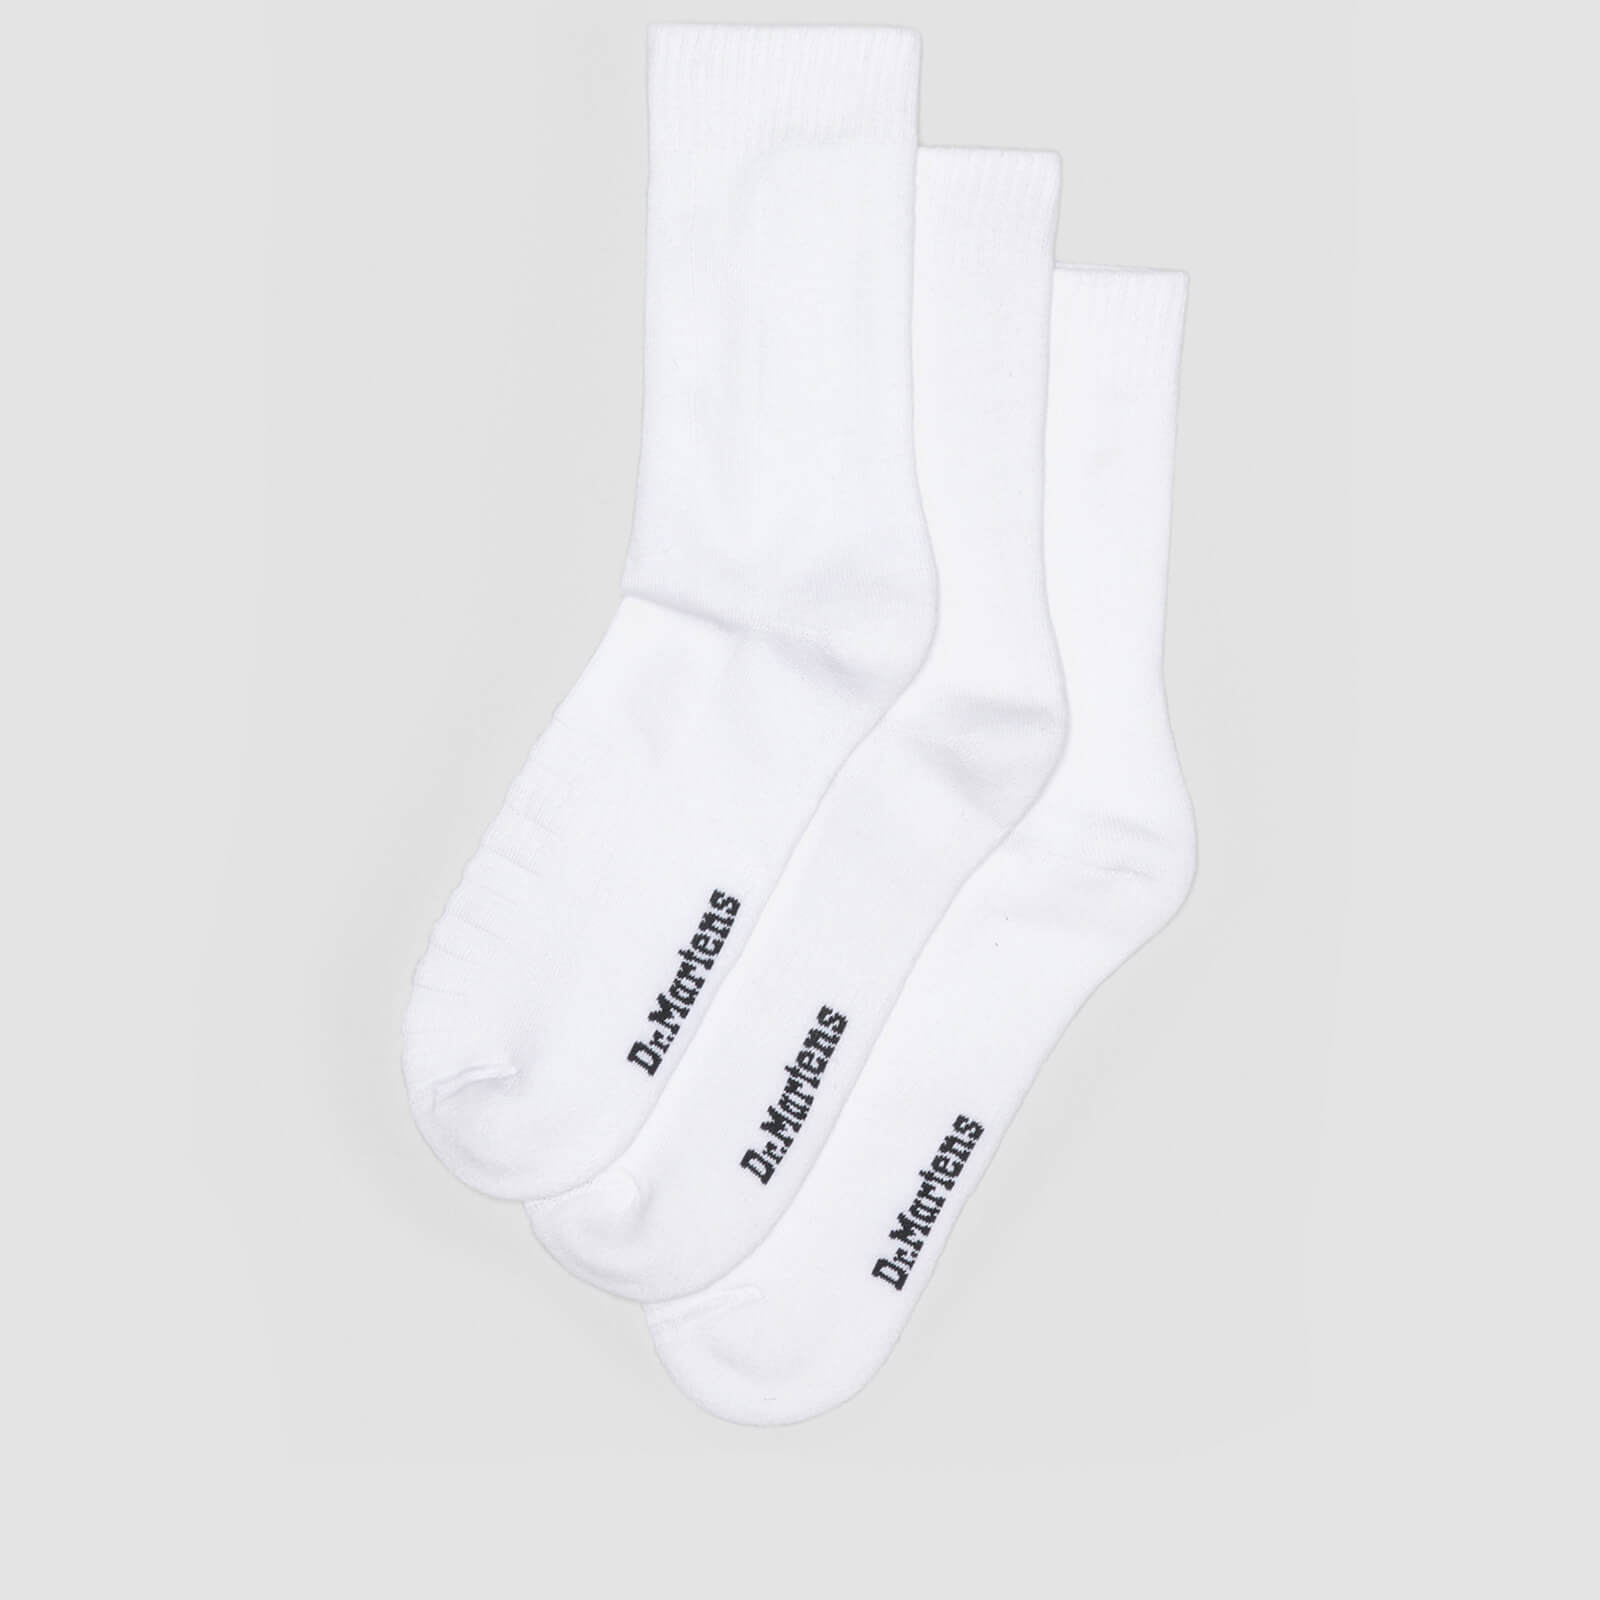 Dr. Martens Double Doc Socks 3 Pack - White - M/L